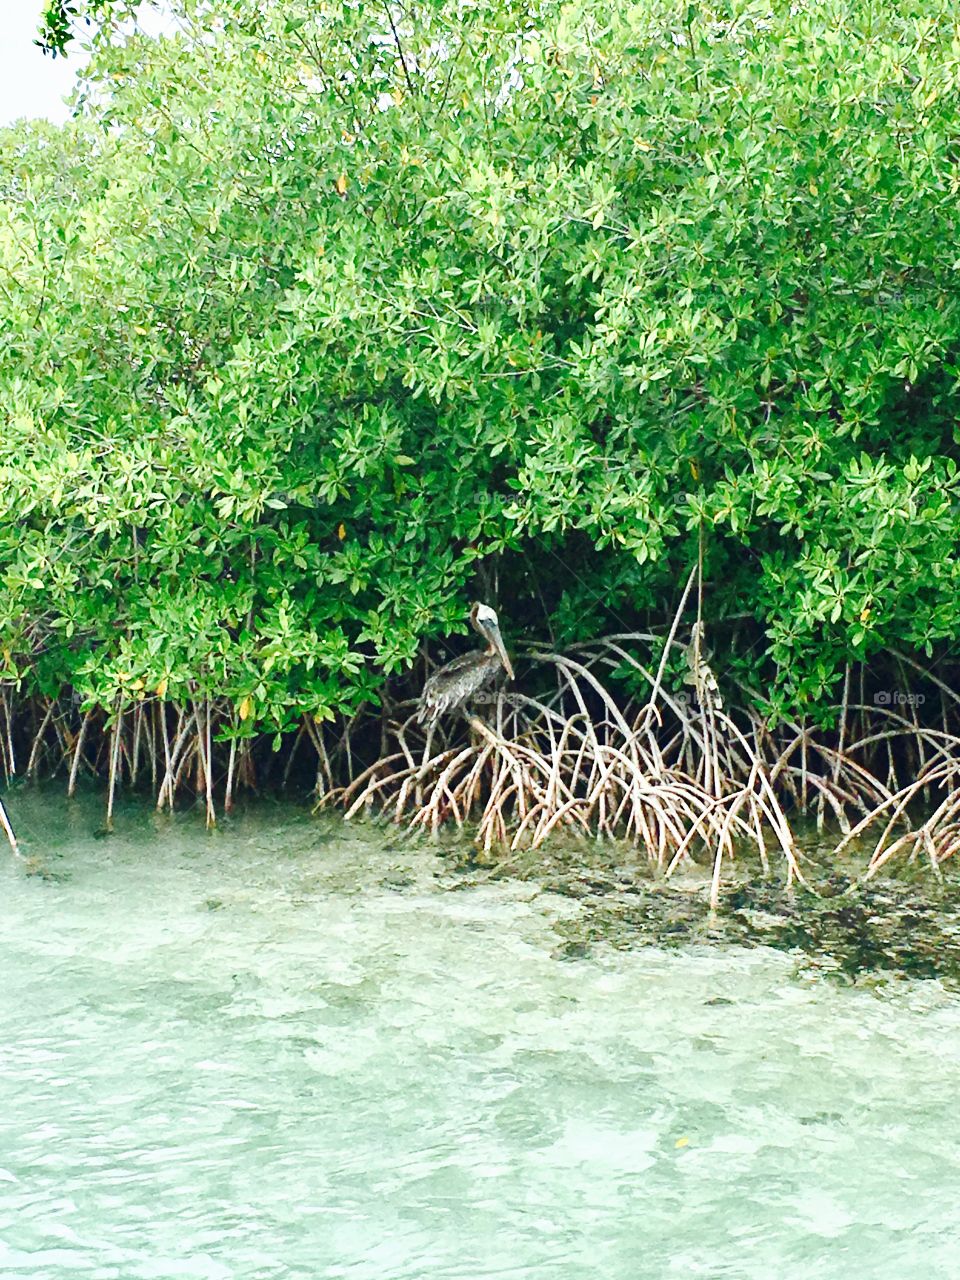 Pelican on Flamingo Island